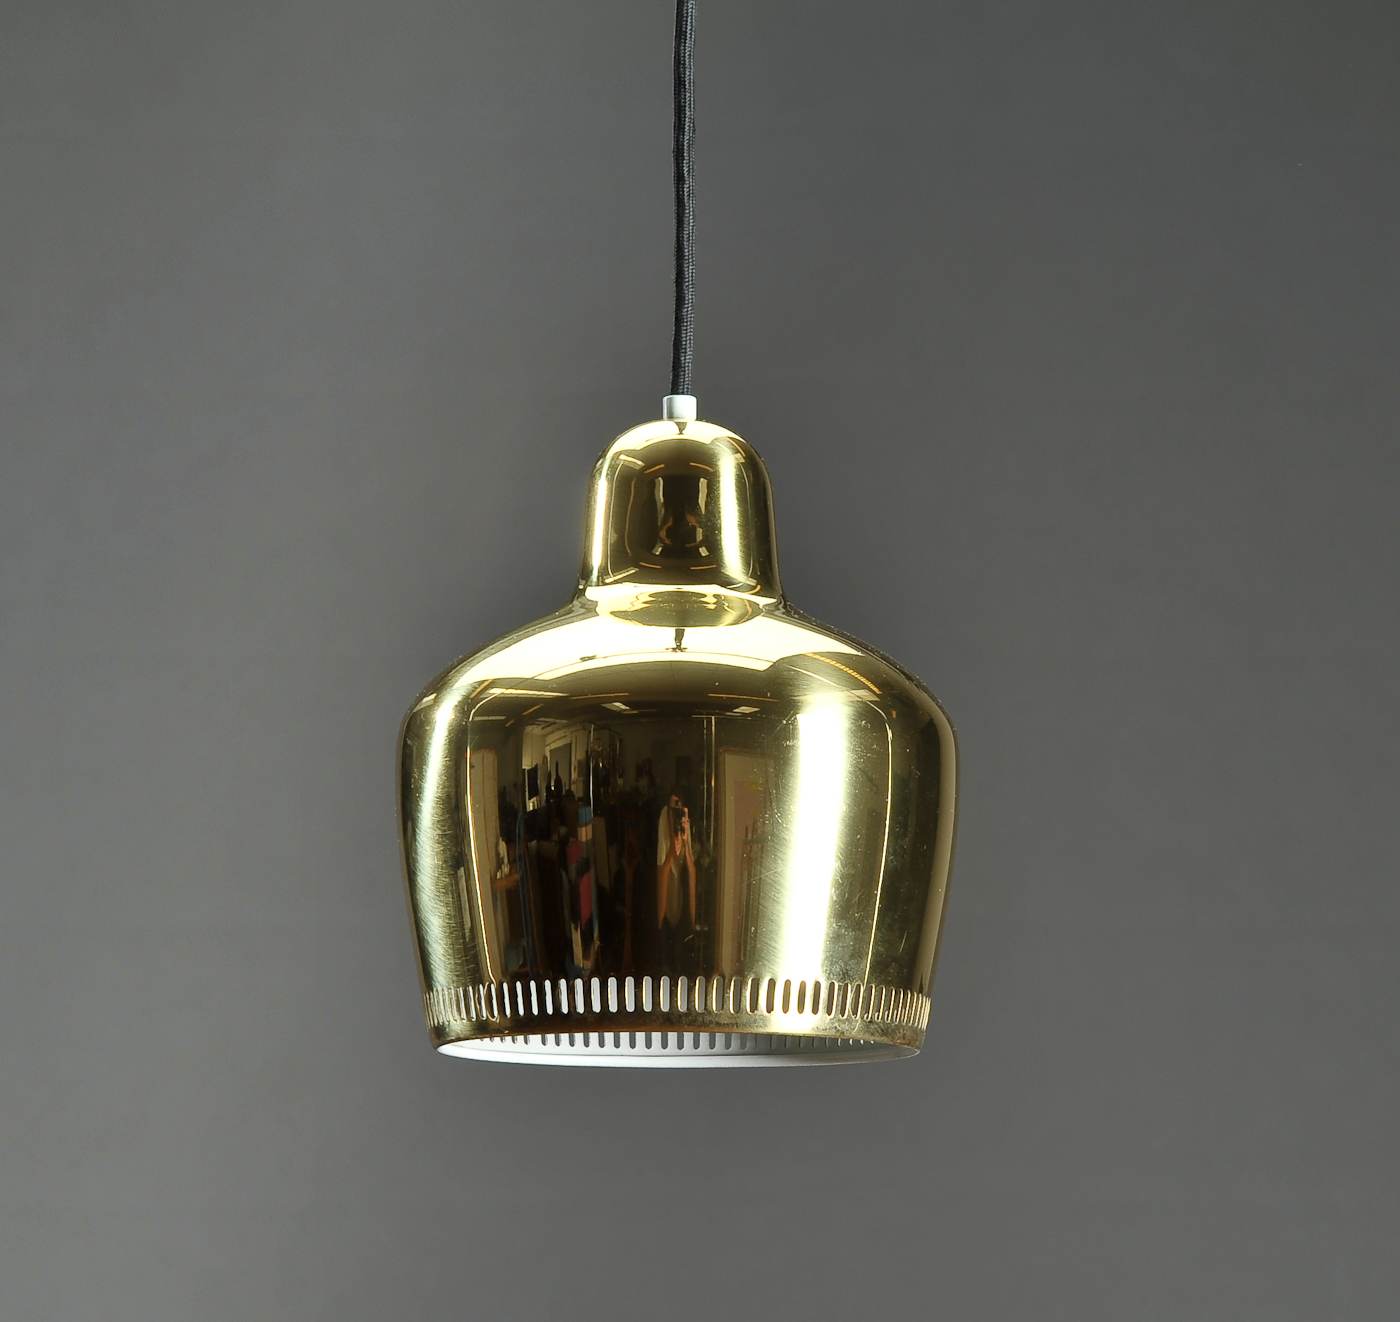 Alvar Aalto. Pendel af messing, model 330 Denne vare er til omsalg under nyt varenummer | Auktionshuset.com